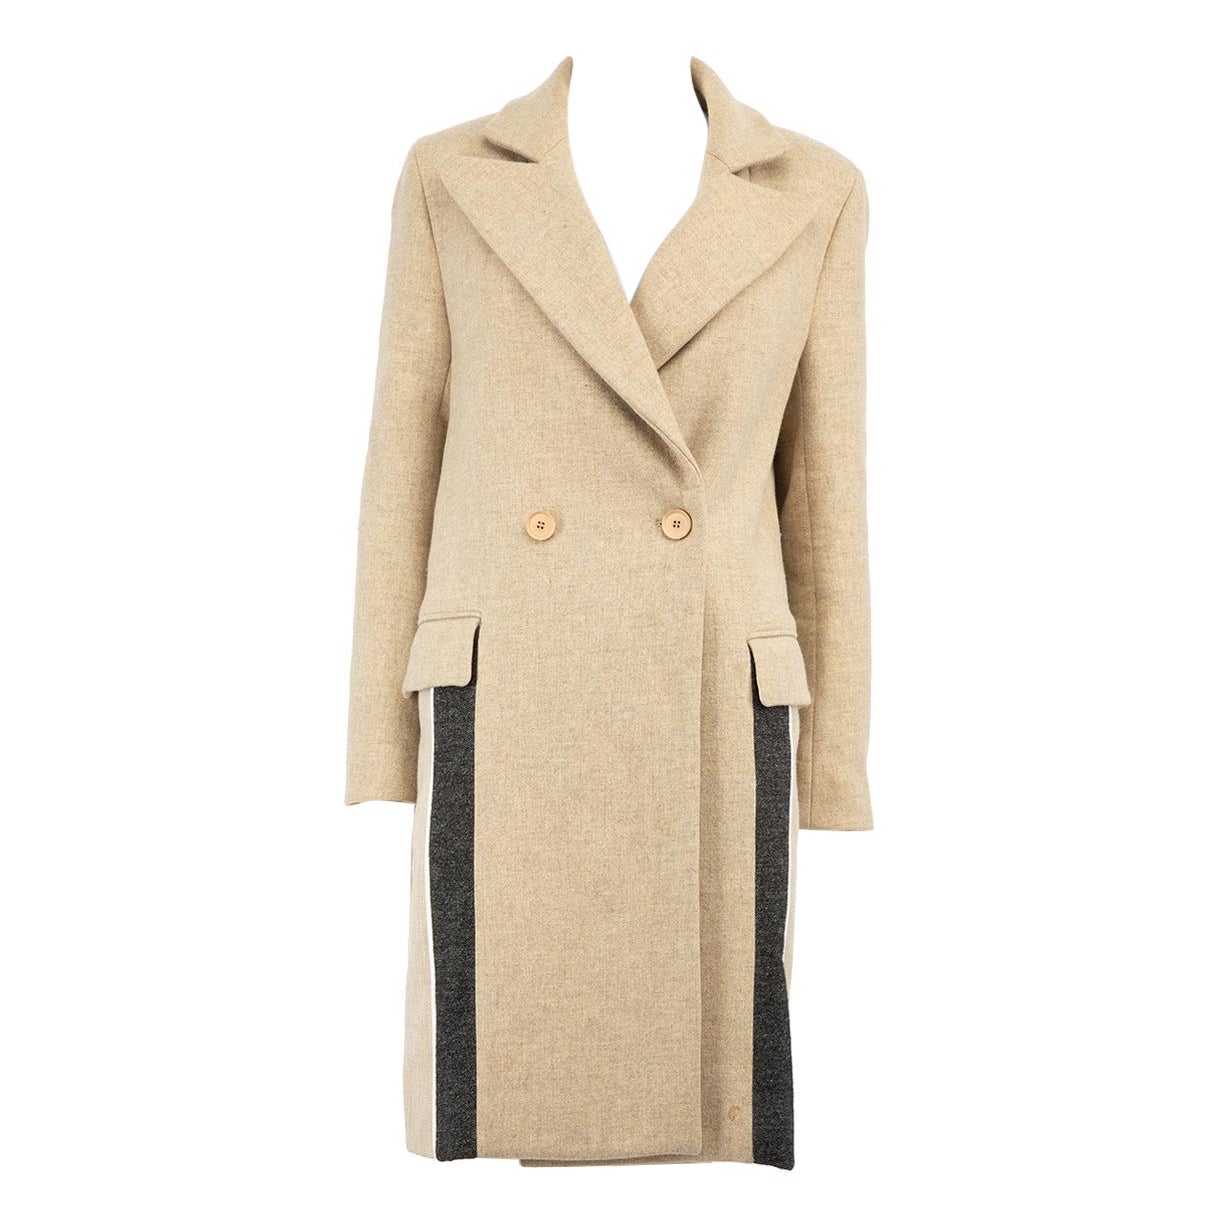 Nicole Farhi Beige Stripe Detail Coat Size S For Sale